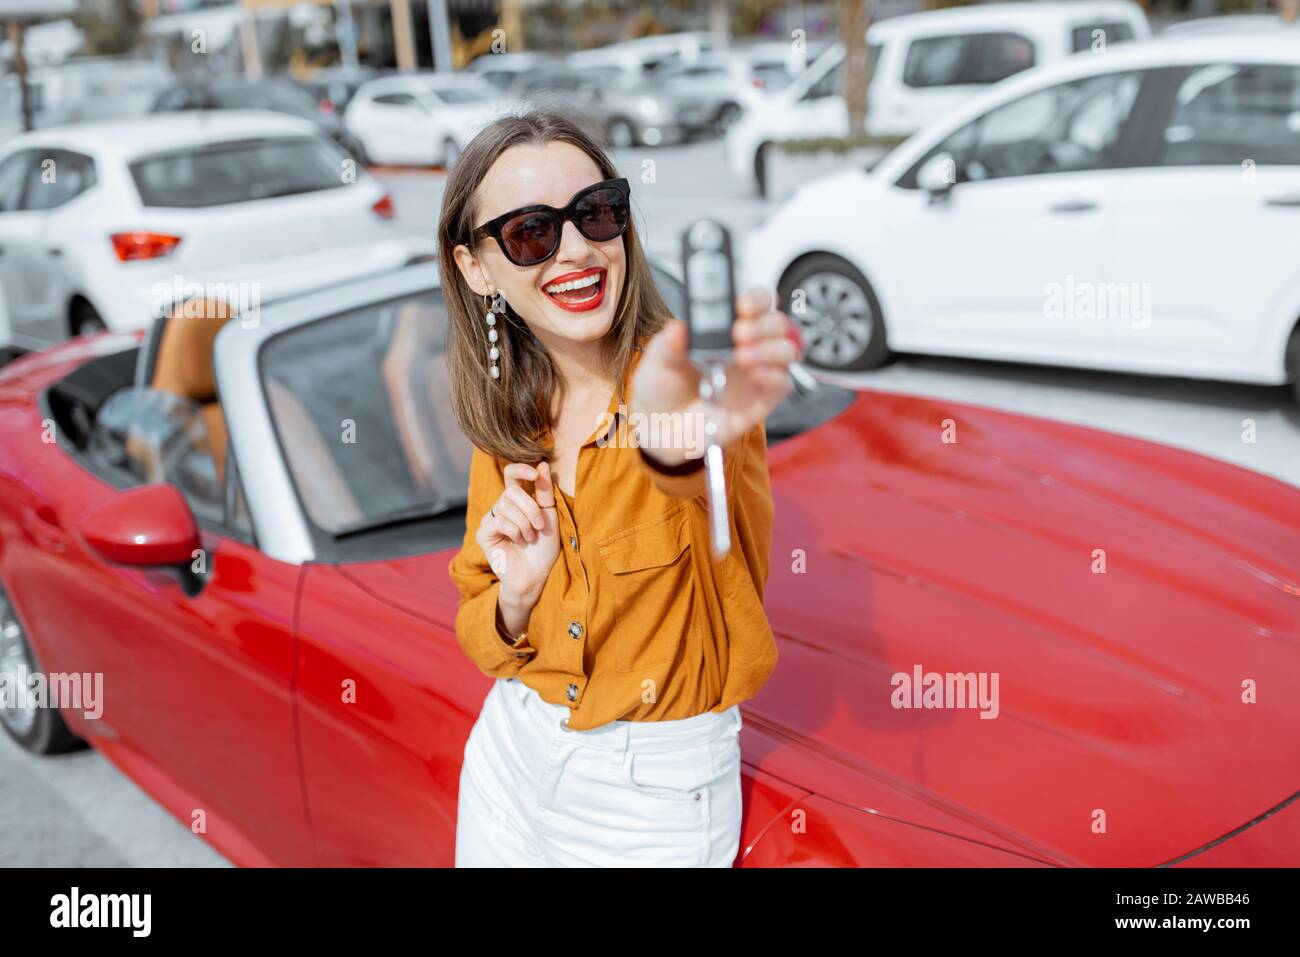 Porträt einer schönen jungen Frau, die mit Schlüsseln in der Nähe des roten Cabriolets auf dem Parkplatz steht. Konzept eines glücklichen Autokaufs oder -Mietens Stockfoto